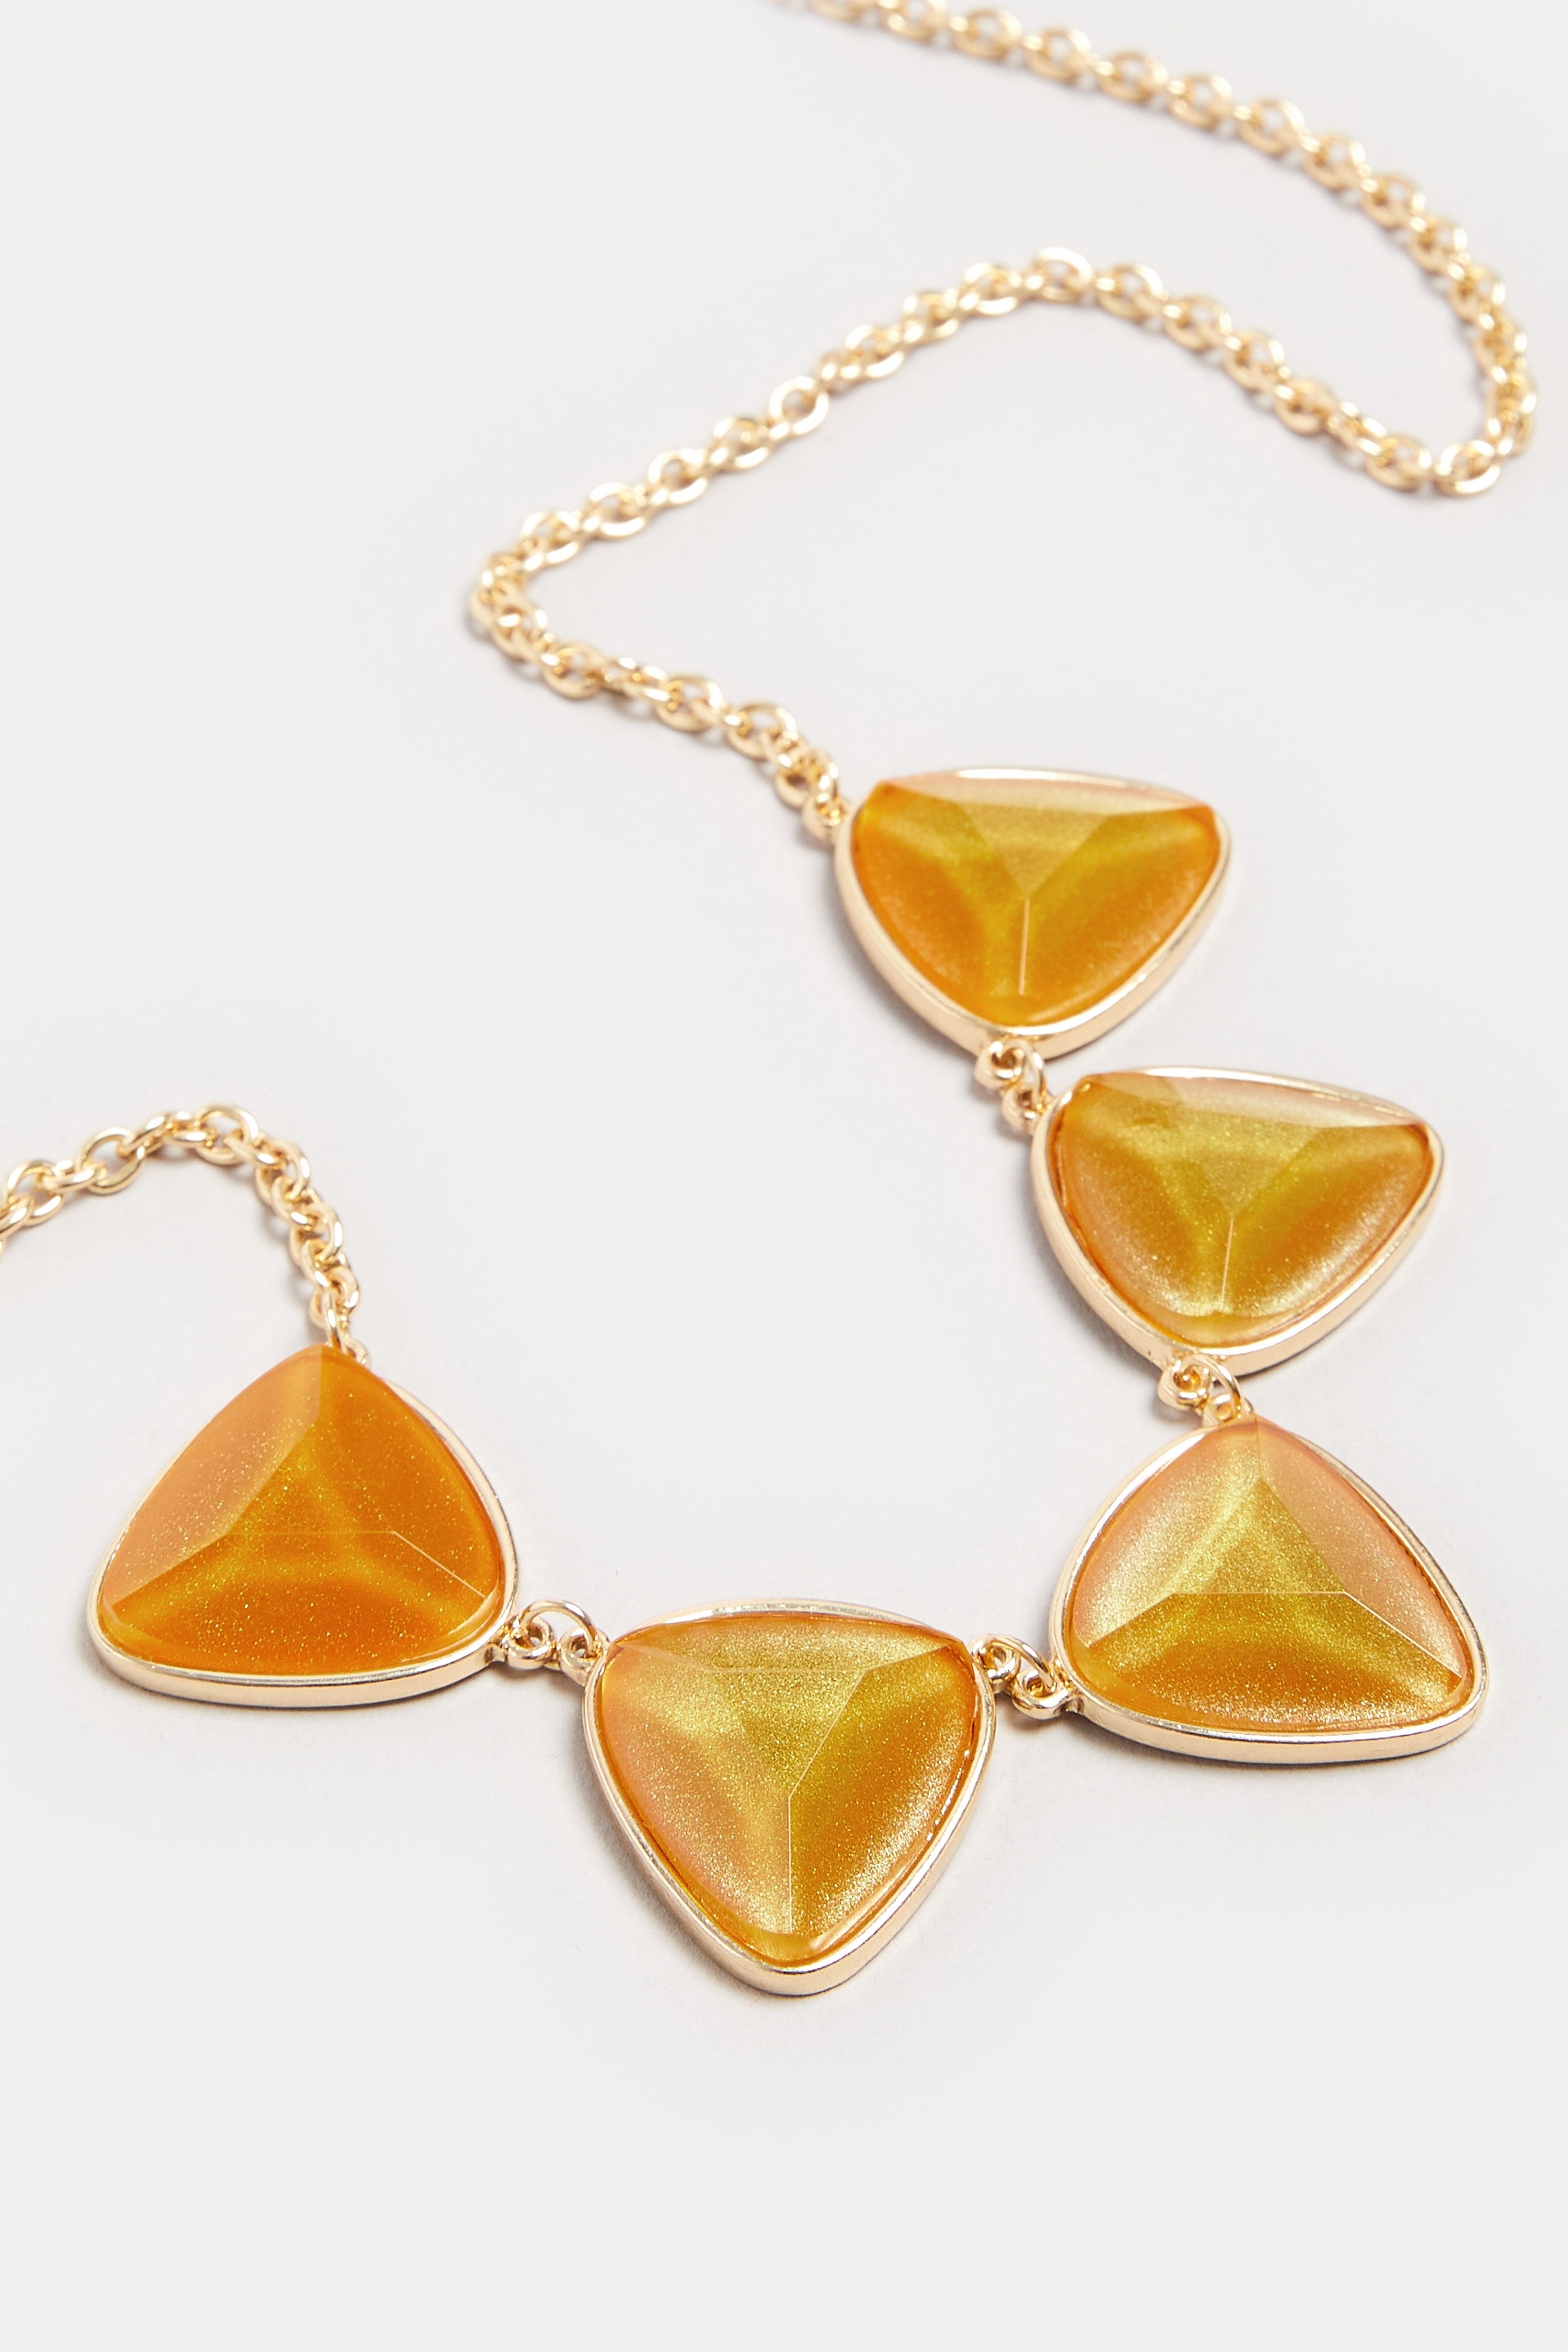 Gold Tone Statement Gemstone Necklace 3